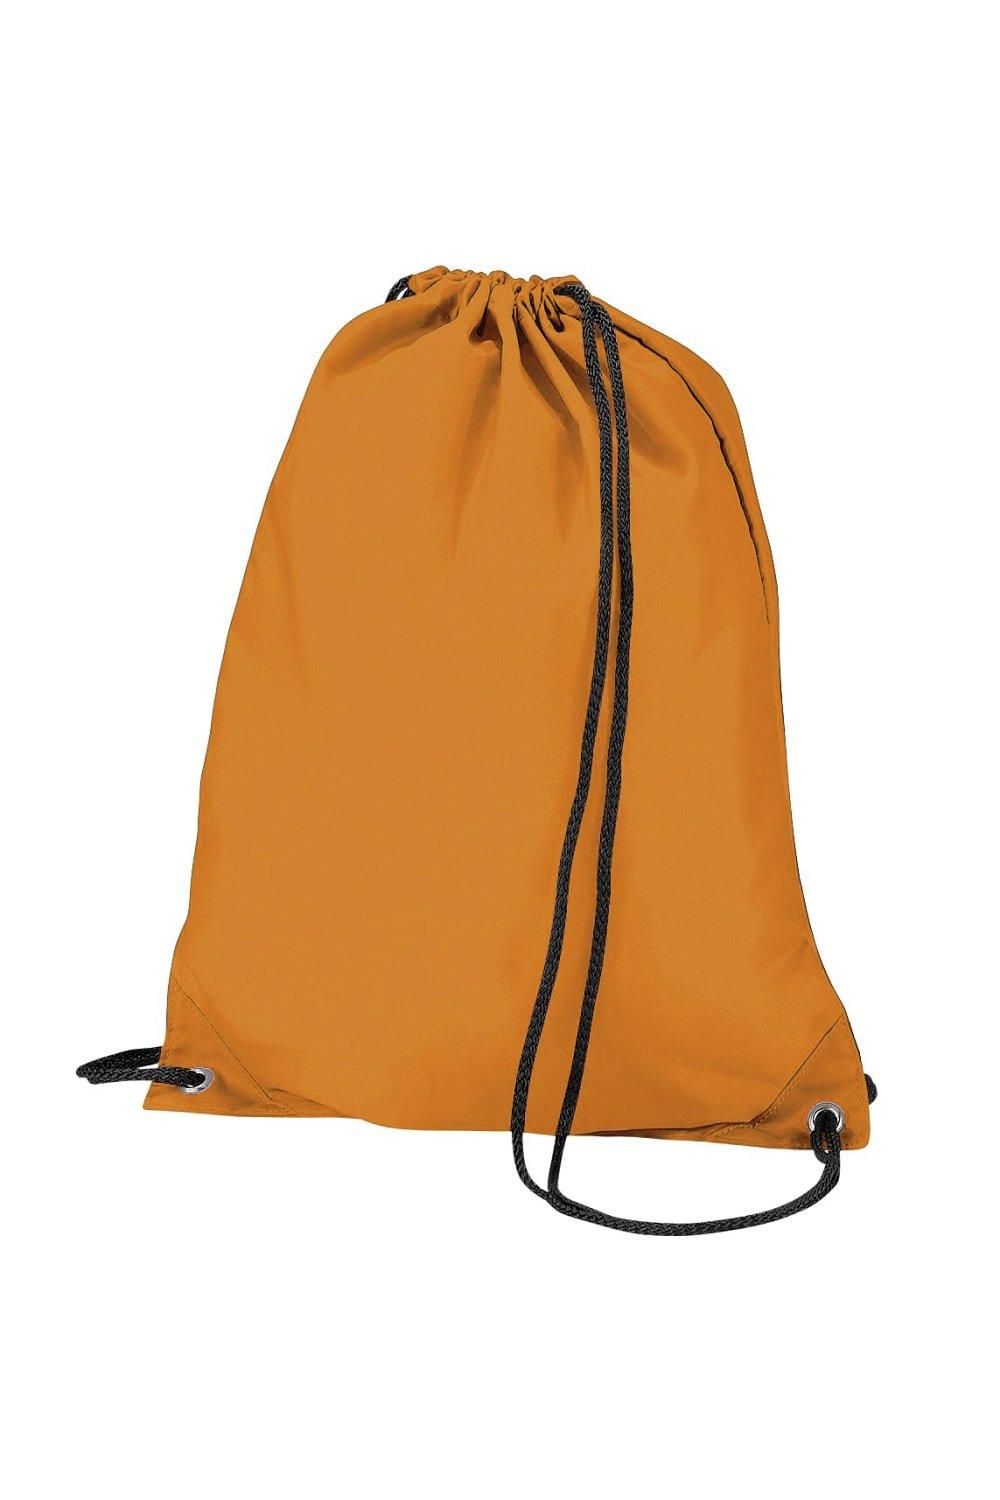 Бюджетная водостойкая спортивная сумка Gymsac на шнурке (11 л) Bagbase, оранжевый